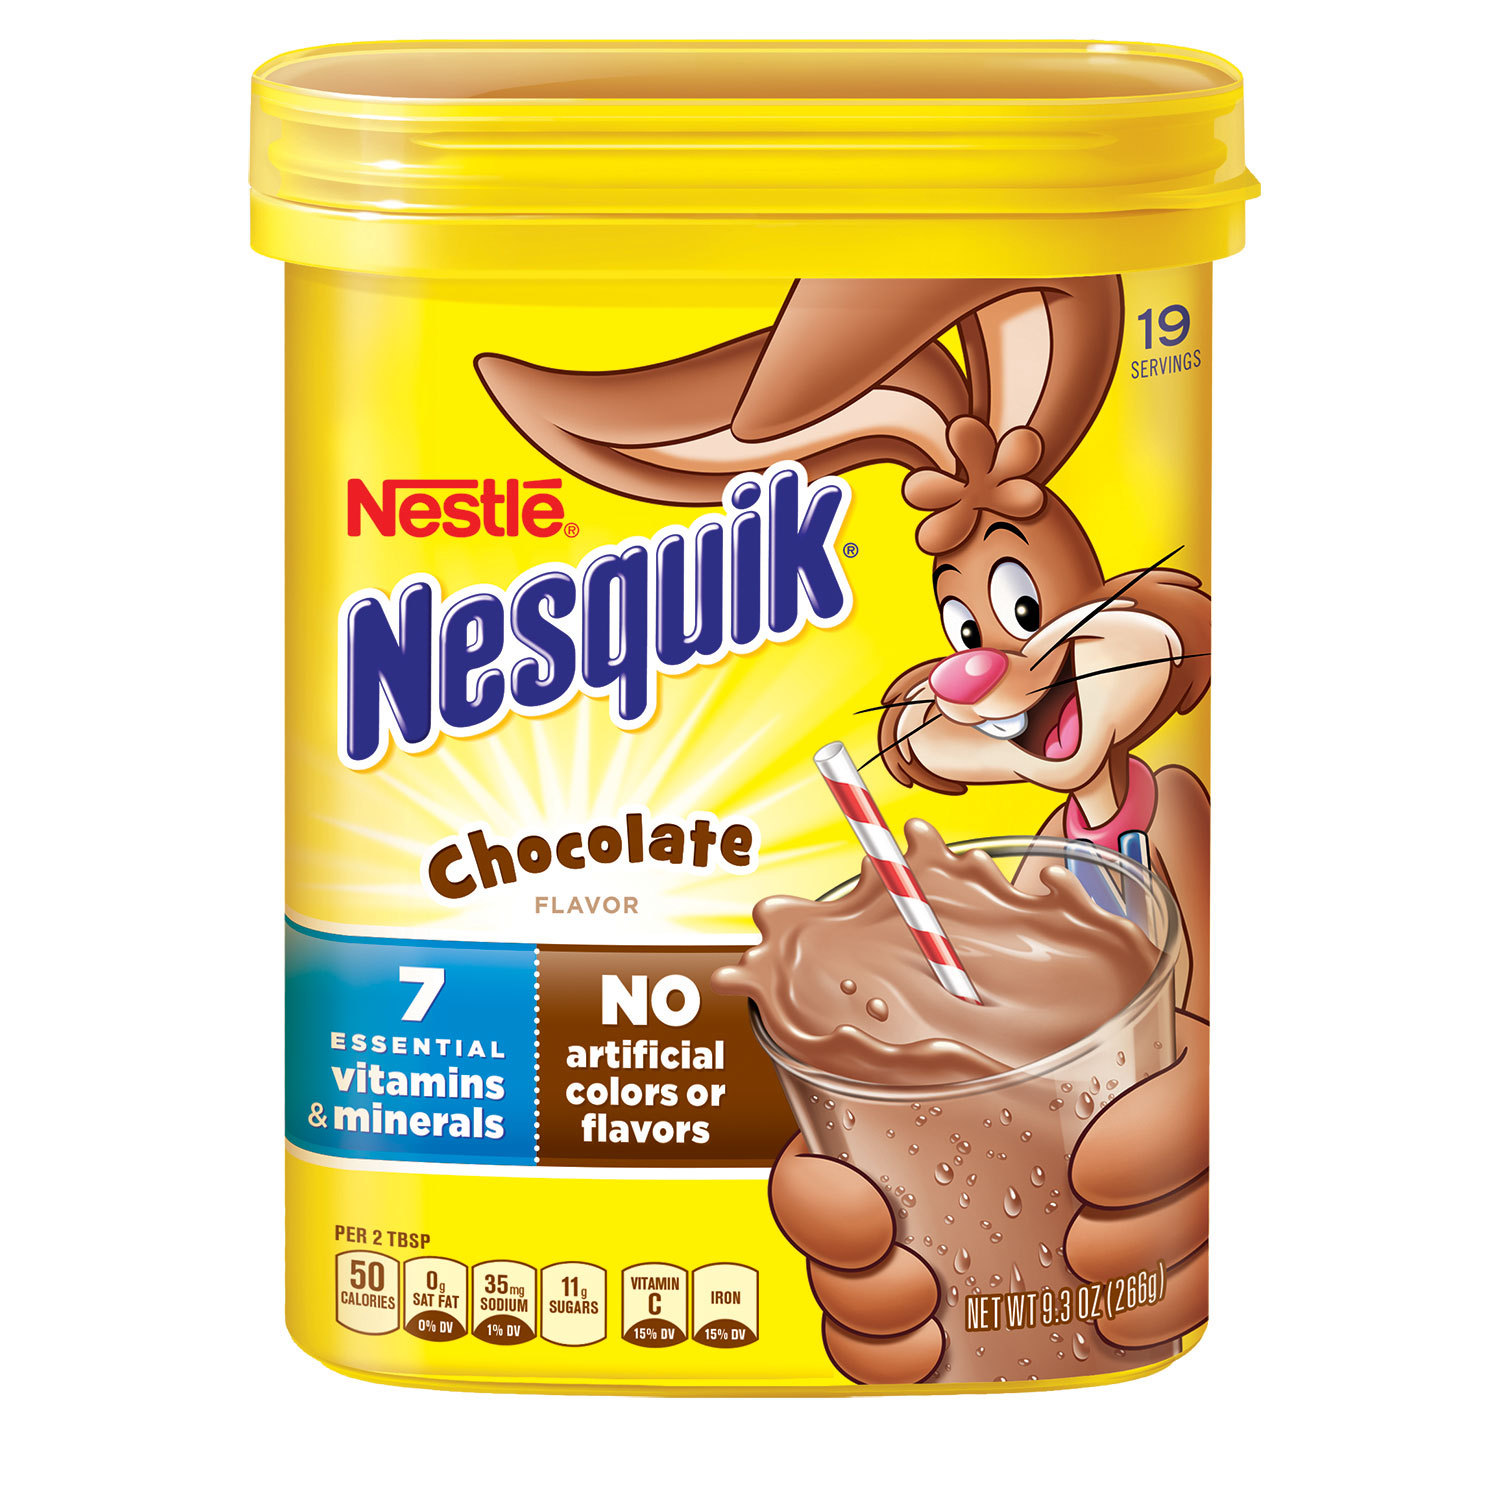 Кролик несквик редизайн. Несквик. Несквик шоколад. Несквик оригинал. Первая реклама Nesquik.